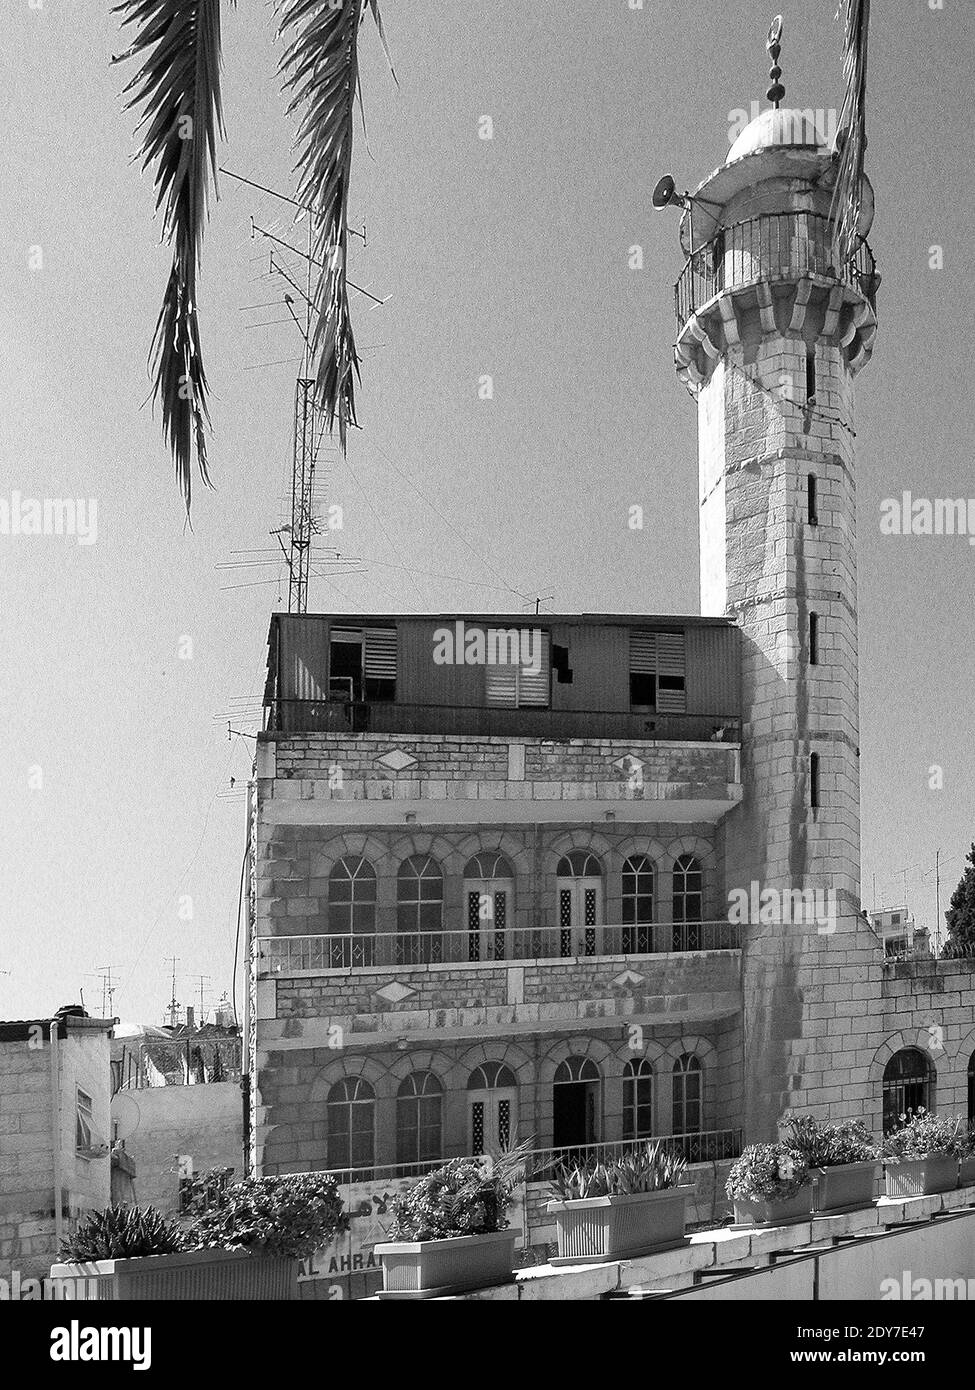 Le haut minaret de la mosquée blanche situé en face de l'Hospice autrichien dans le quartier musulman de Jérusalem. Palestine Israël Stock Photo